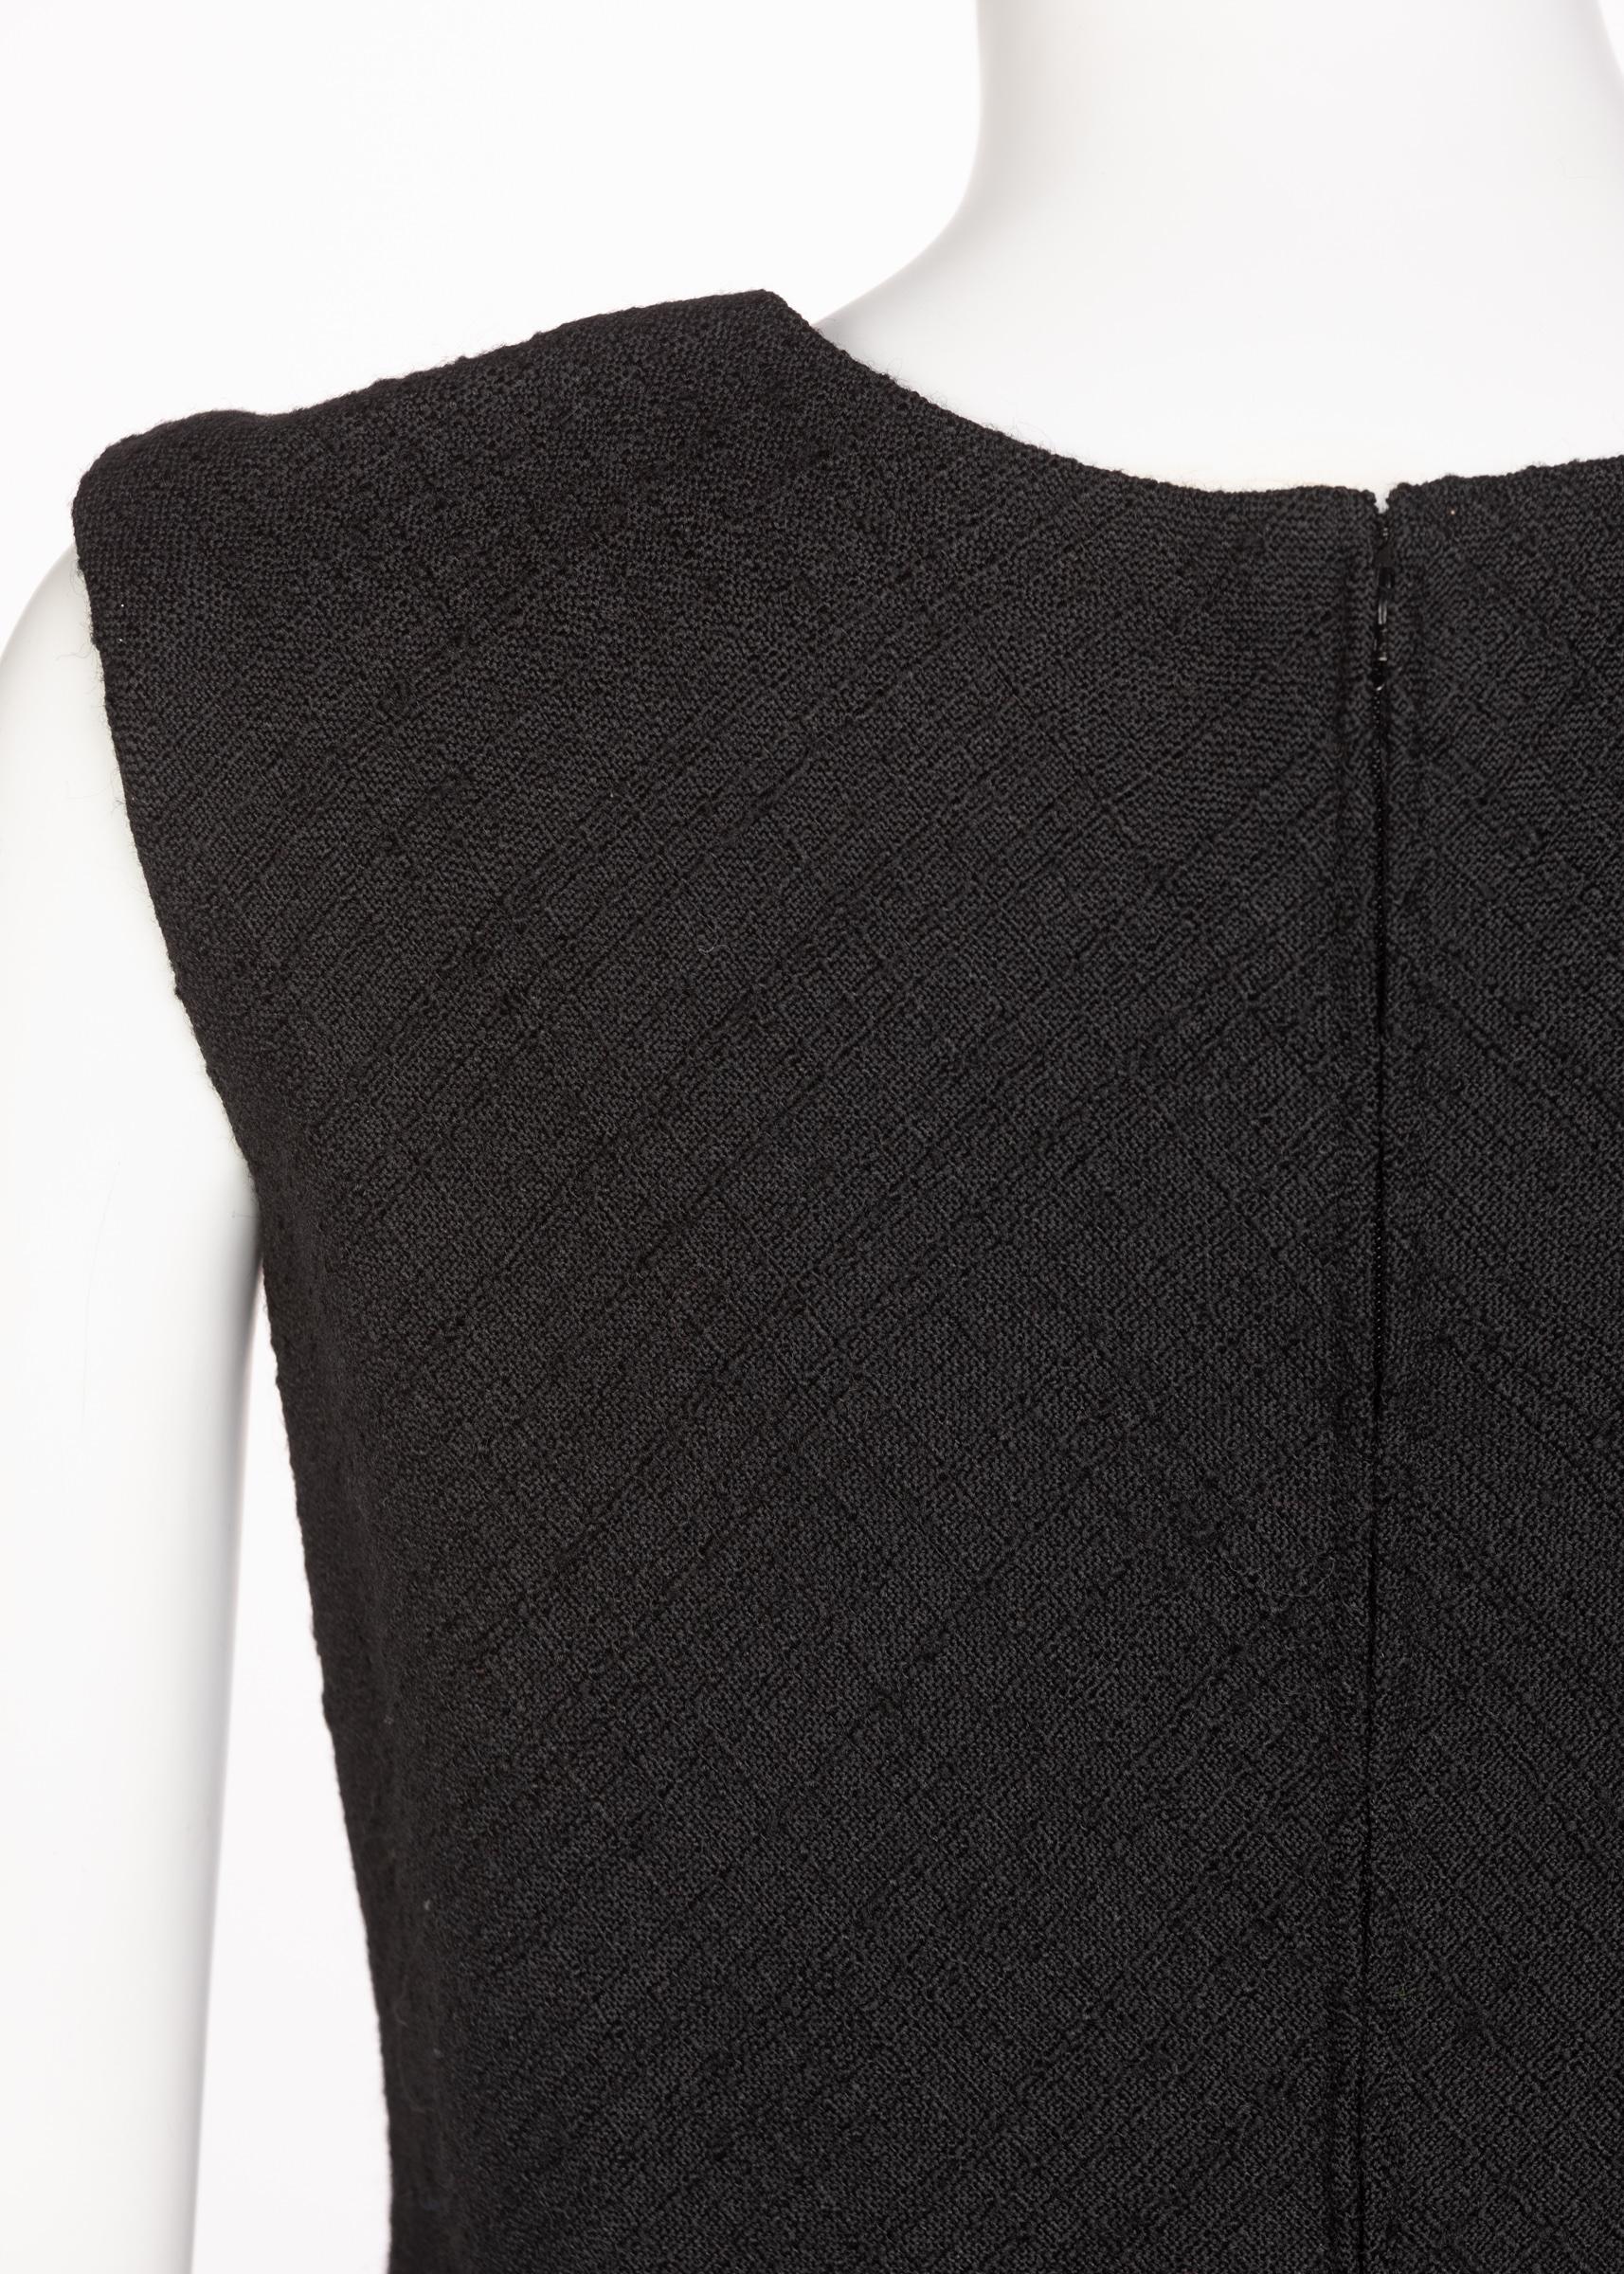 Norman Norell Couture Tailleur jupe tailleur noir/haut sans manches, années 1960 en vente 3